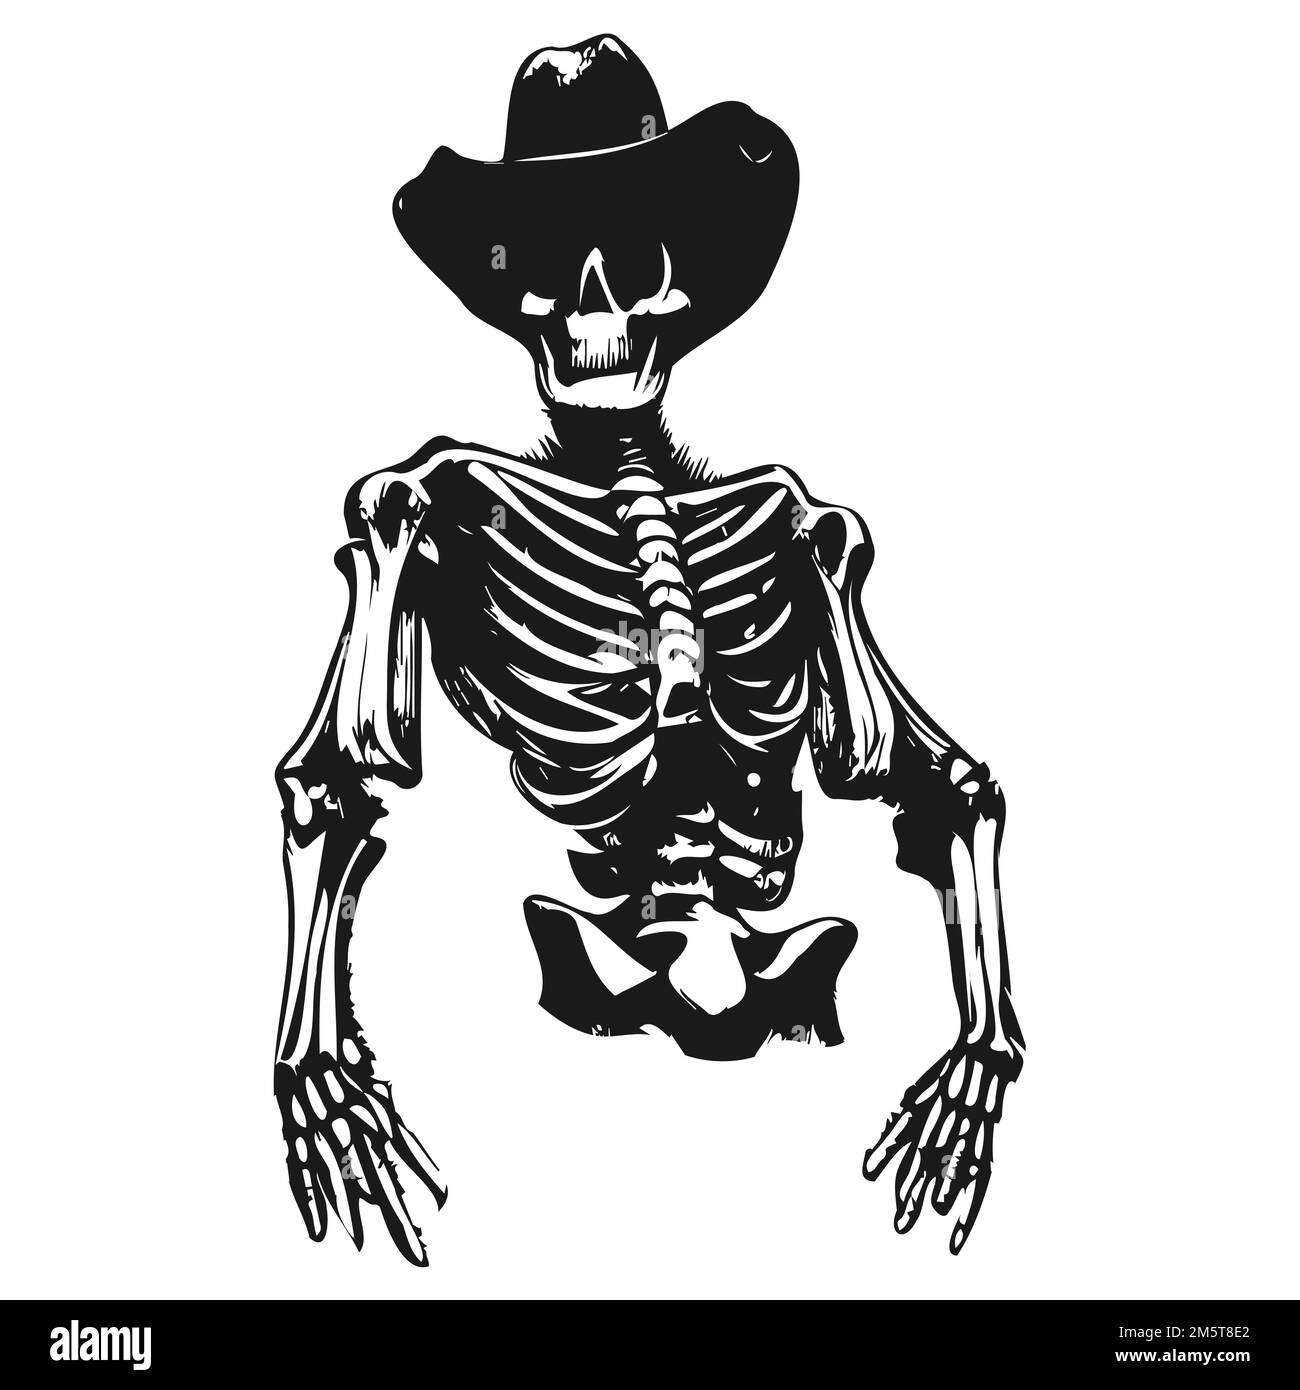 Cowboy-Skelett-Tattoo handgezeichnete Vektor-Schwarz-Weiß-Clip-Art  Stock-Vektorgrafik - Alamy